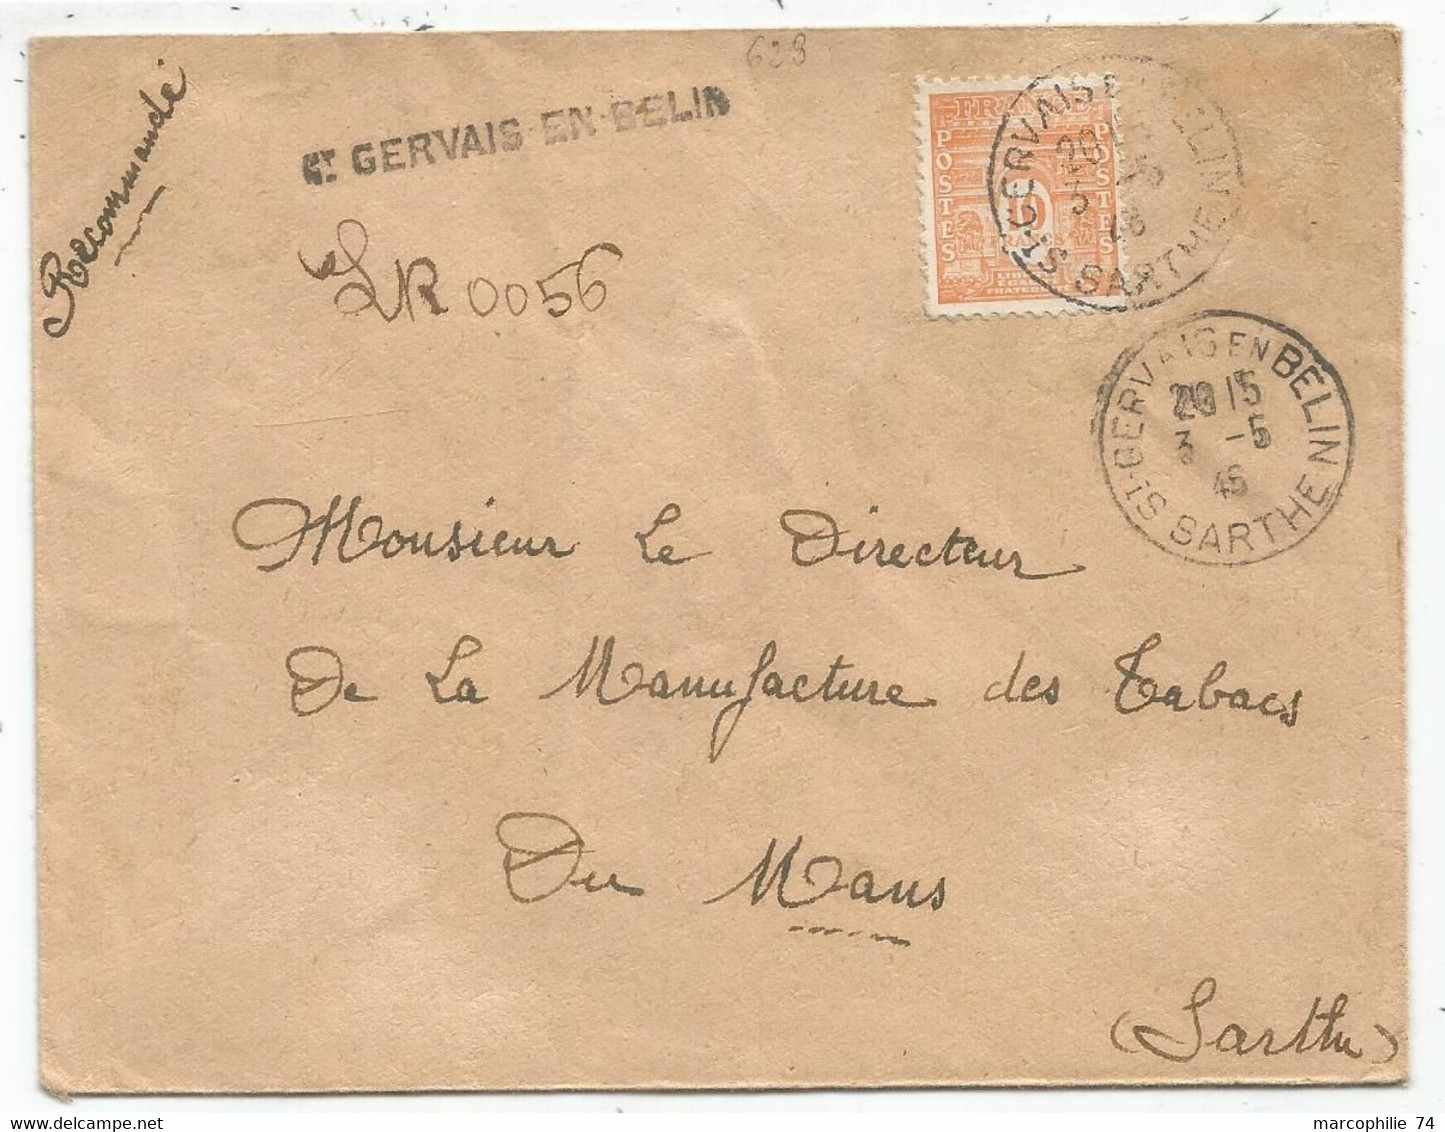 N°629 SEUL LETTRE REC PROVISOIRE ST GERVAIS EN BELIN 3.5.46 SARTHE AU TARIF - 1944-45 Arc De Triomphe